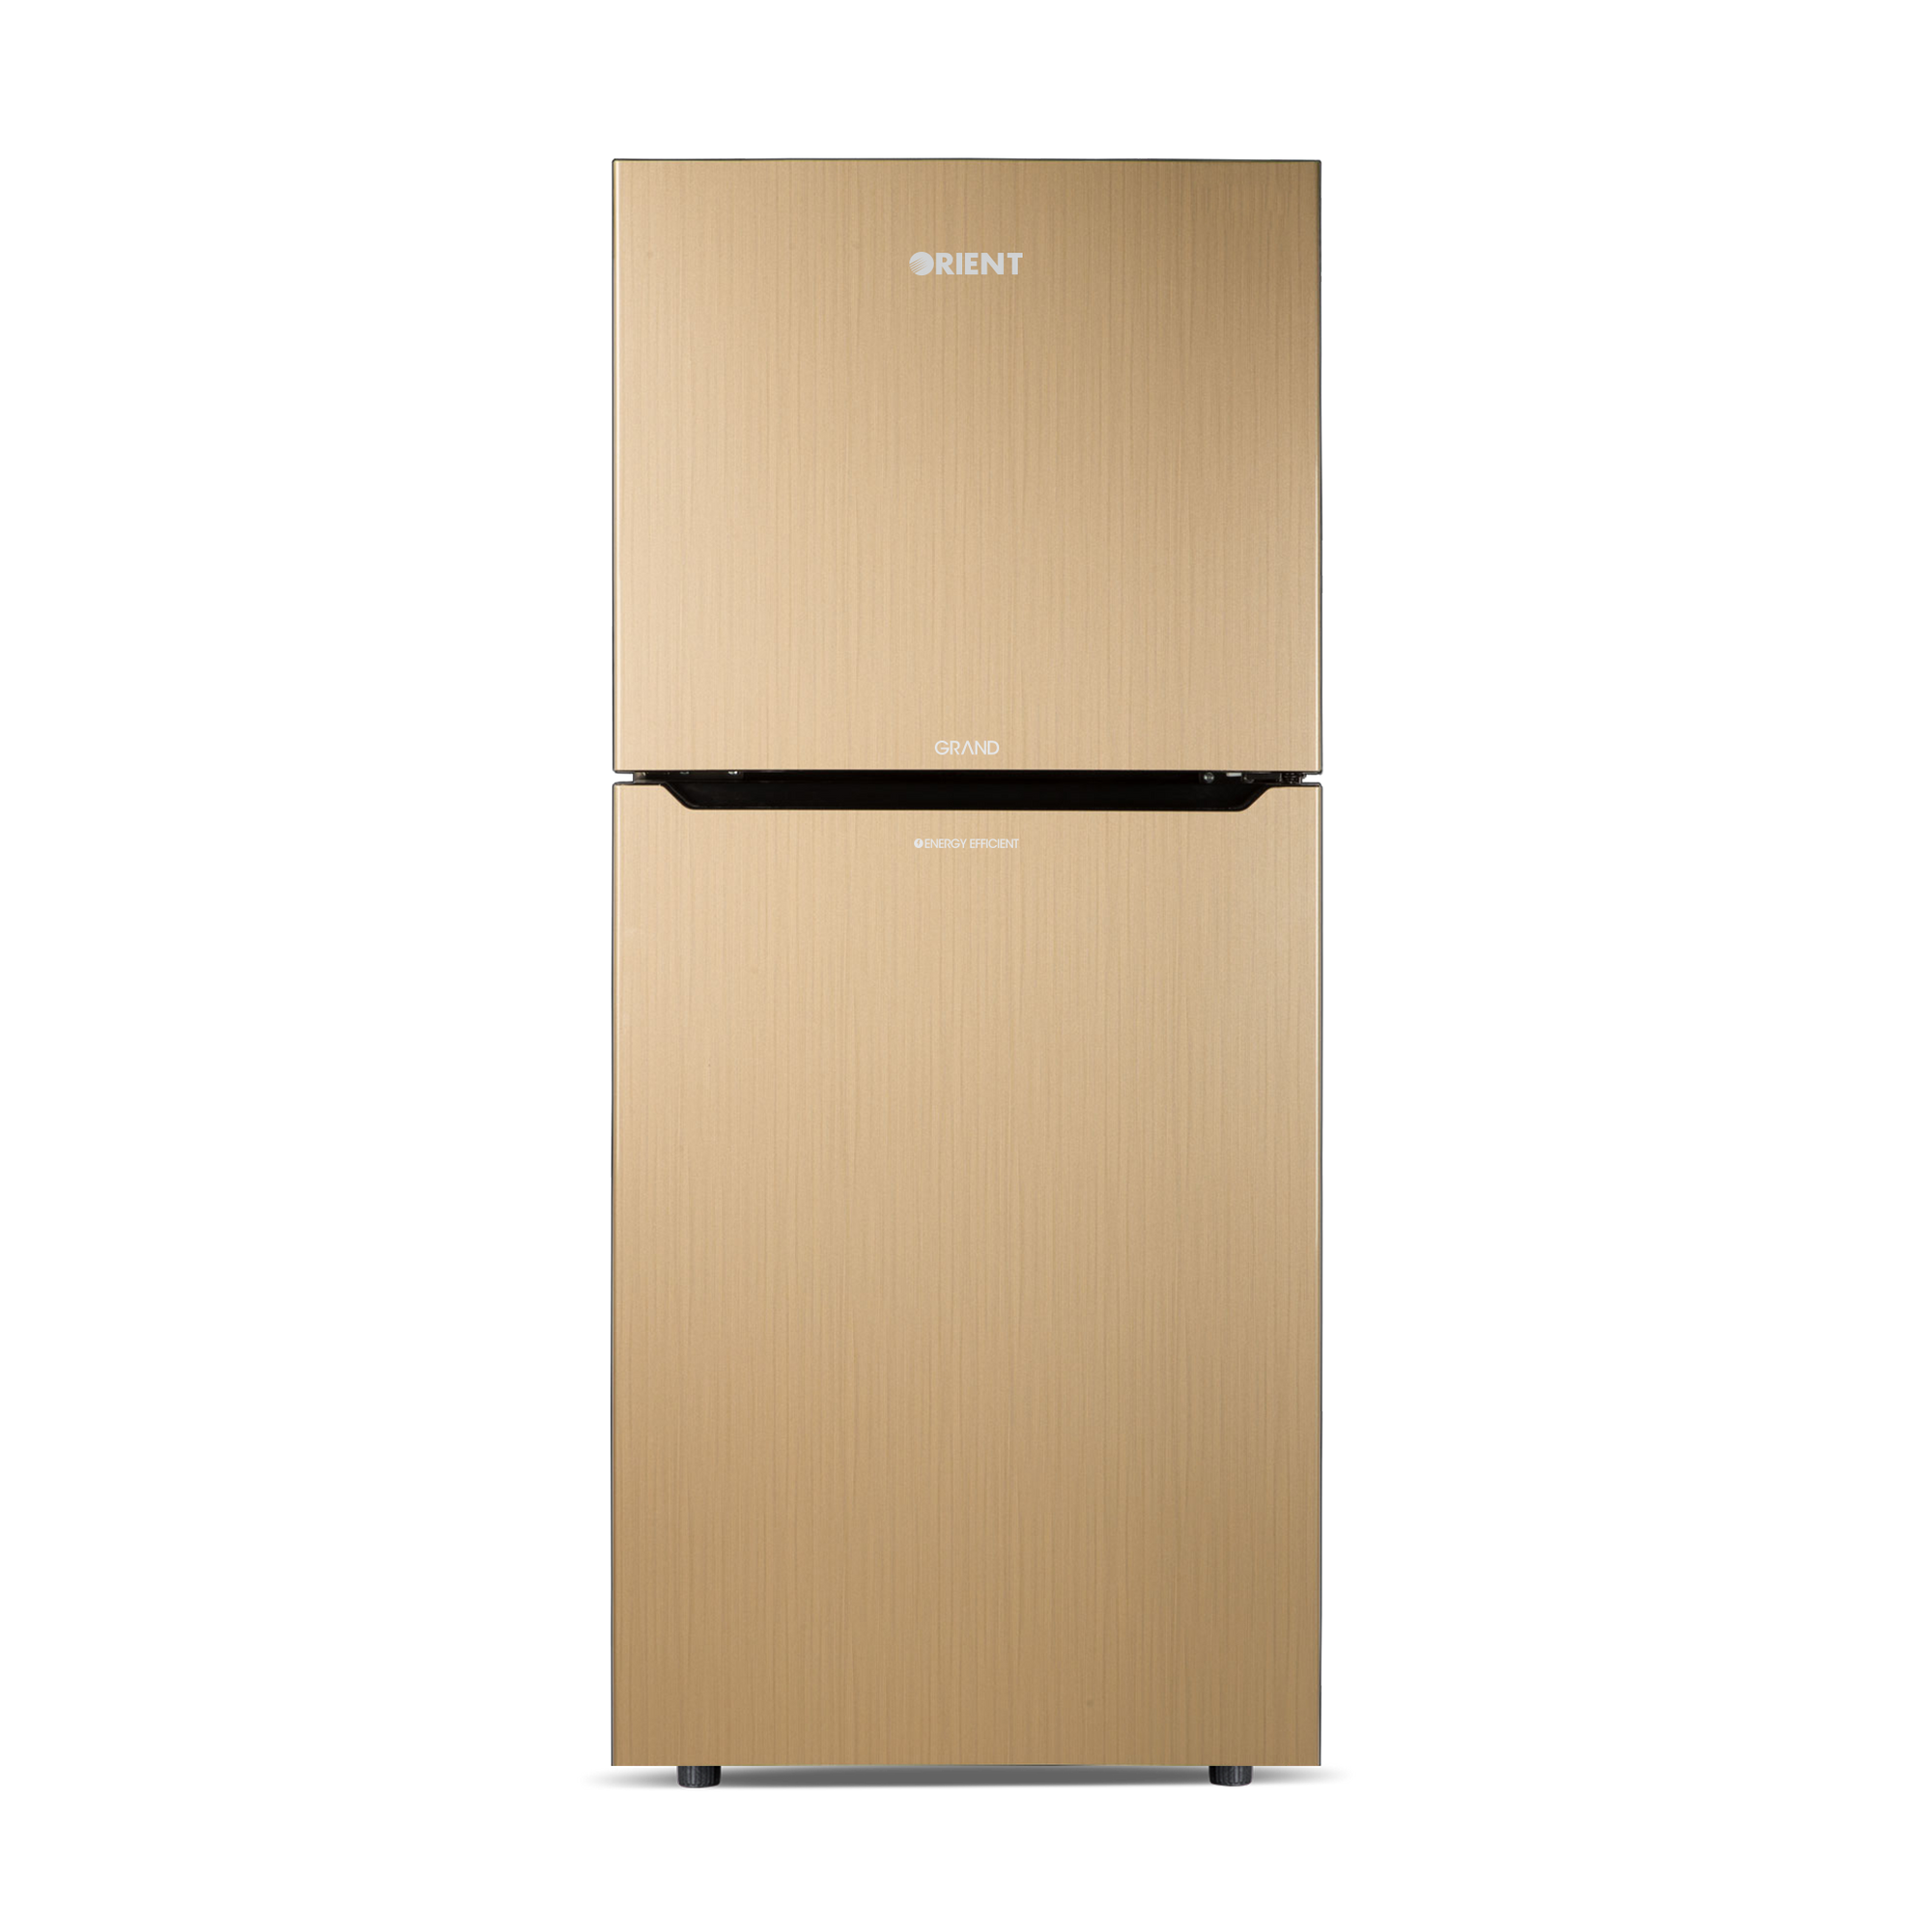 Orient Refrigerator Double Door - 230 Grand VCM